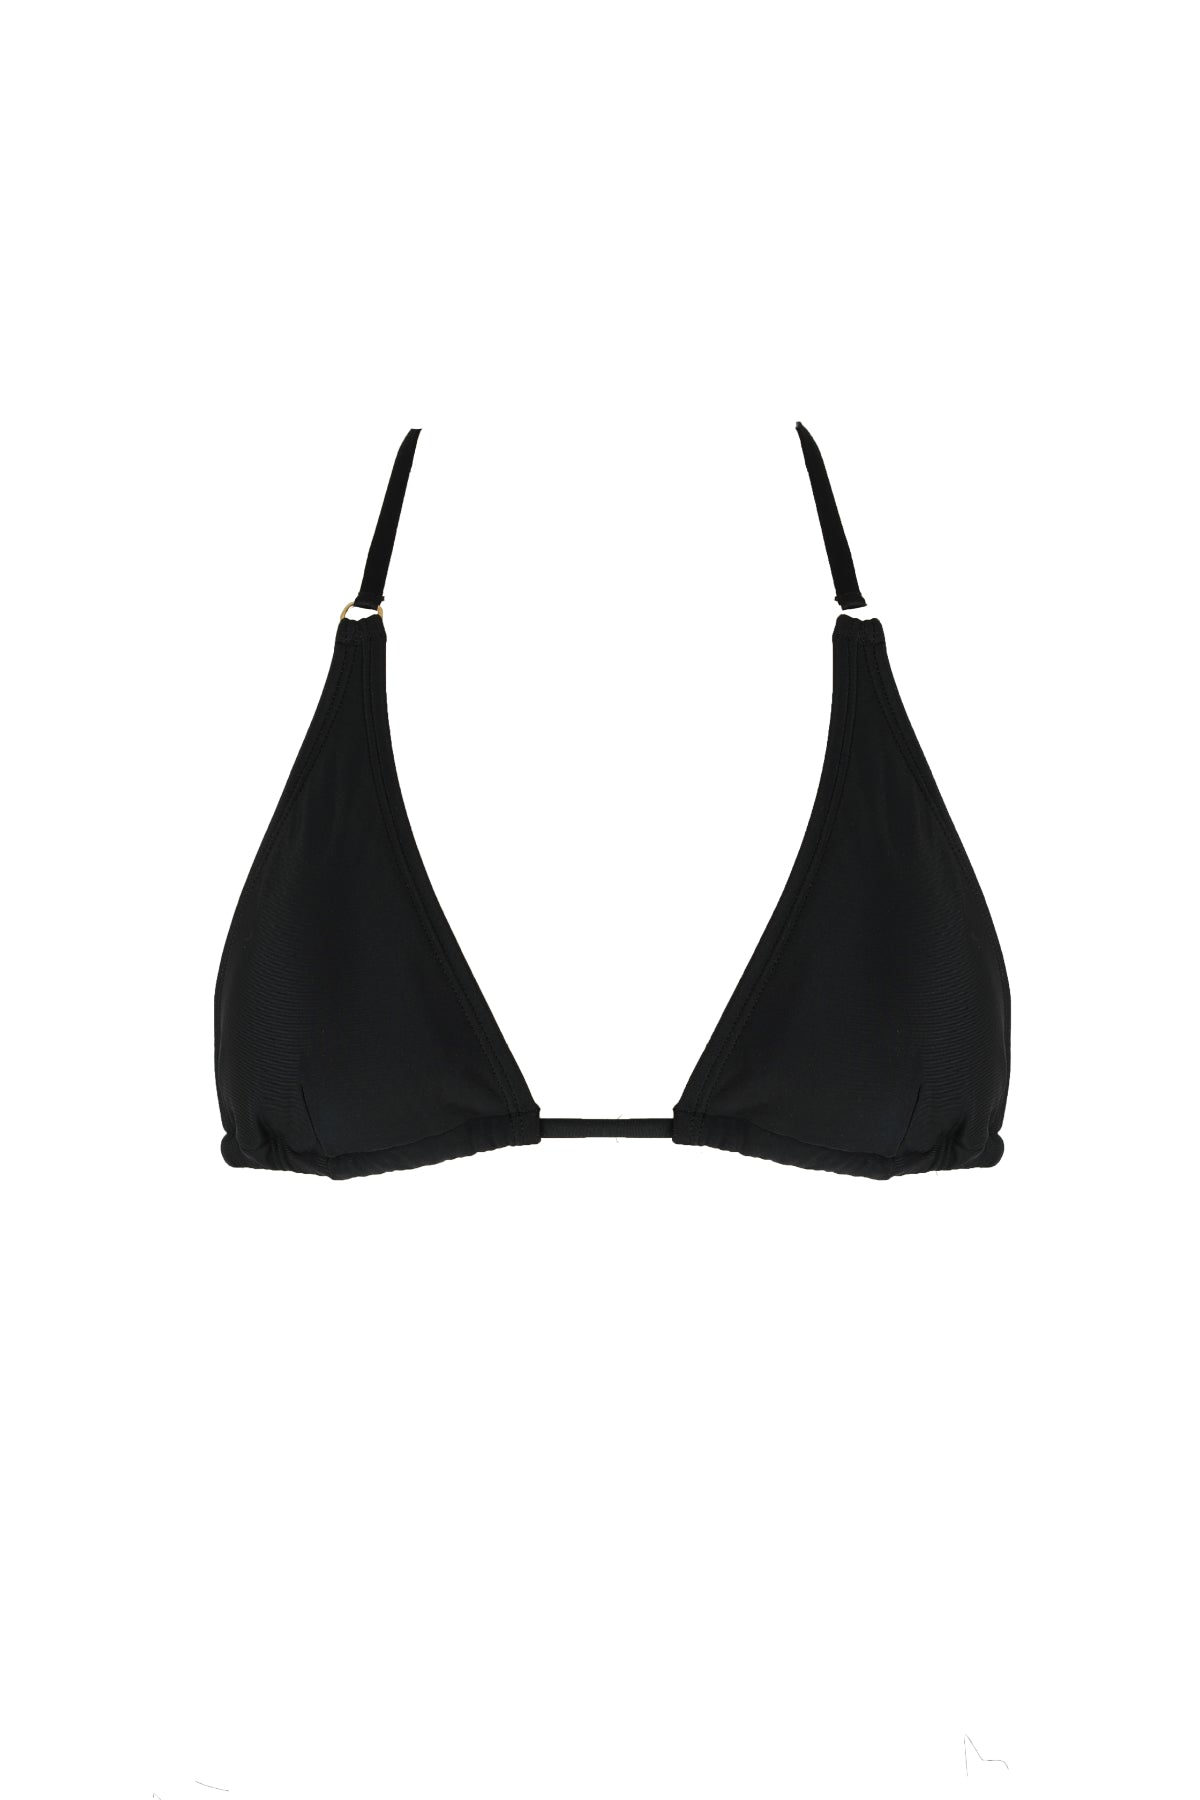 black triangle top bikini luxury swimwear koraru sustainable swimwear halther bikini top